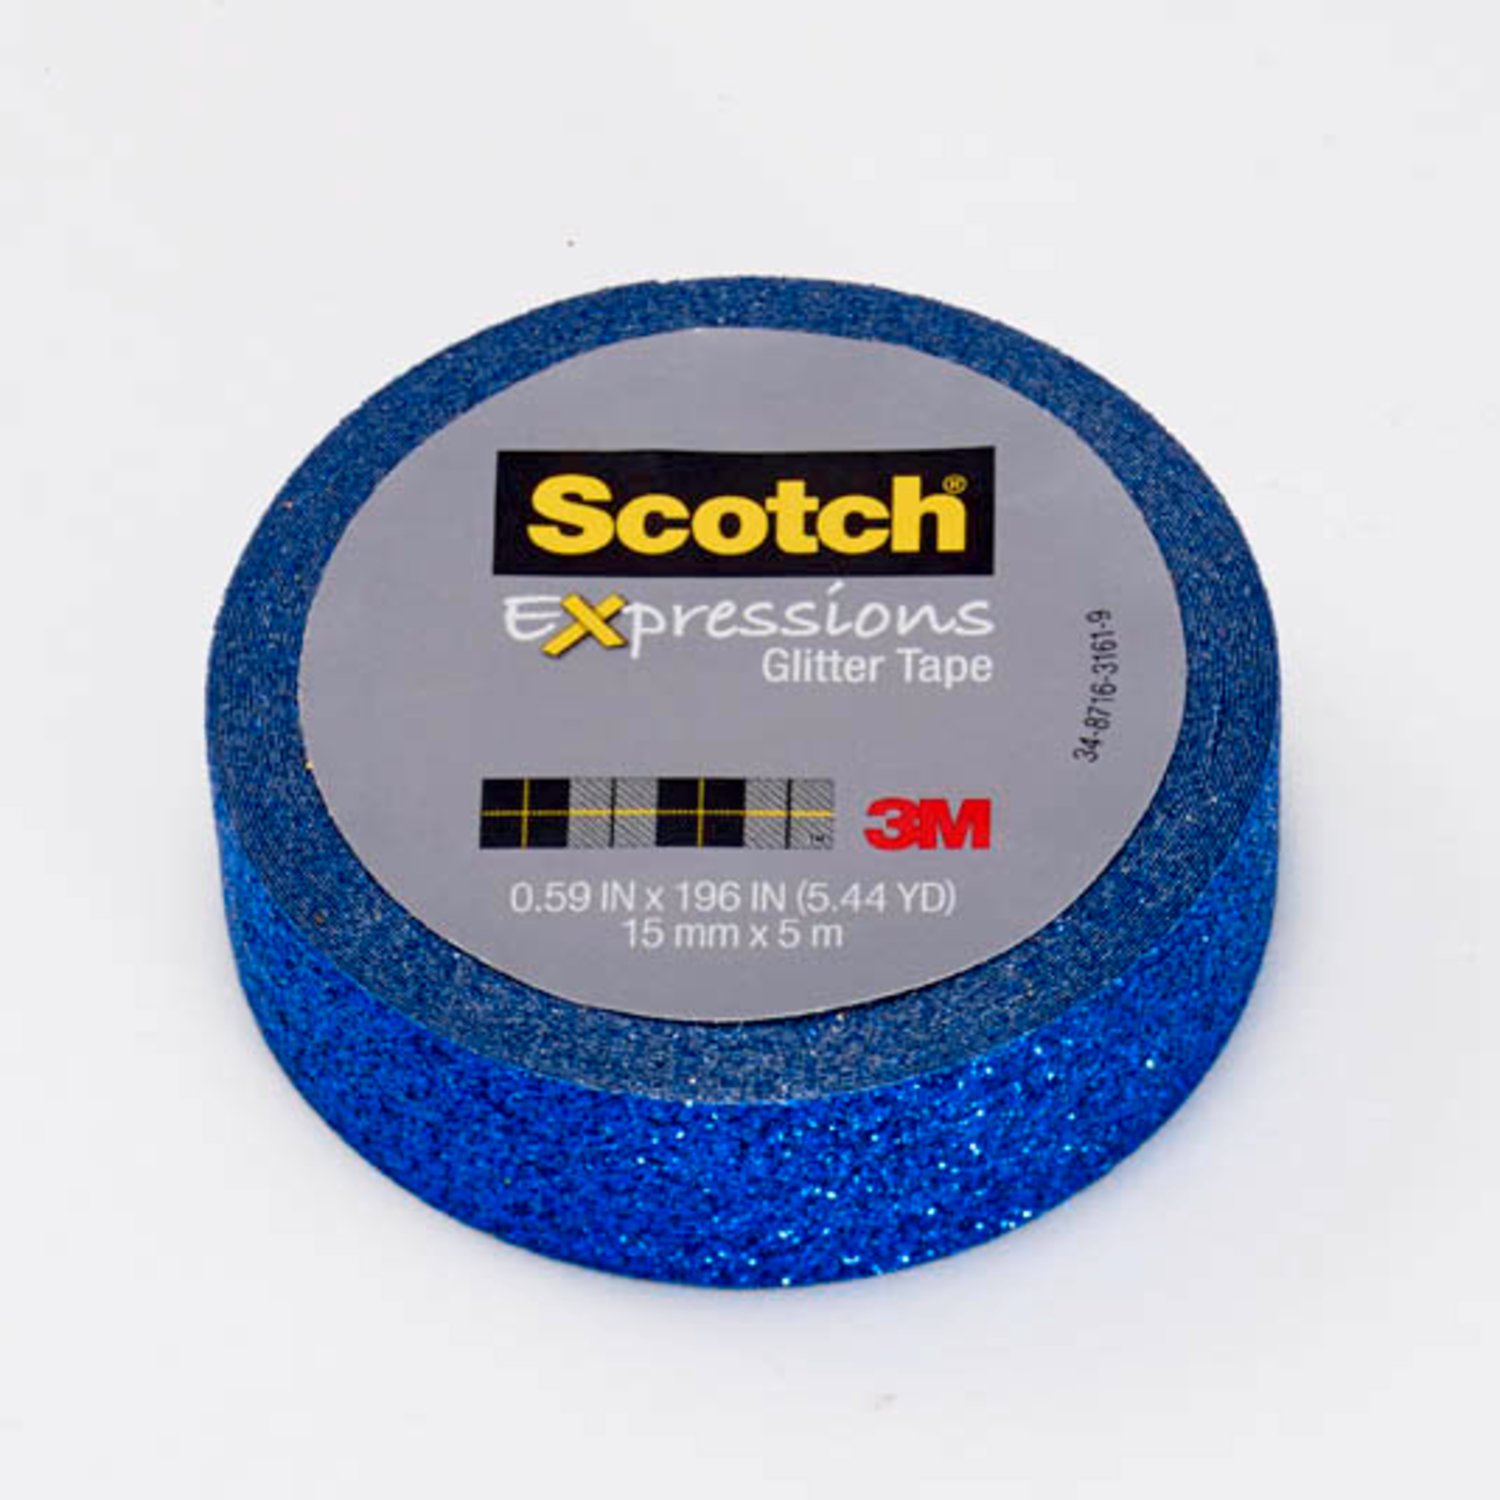 7100143026 - Scotch Expressions Glitter Tape C514-BLU2, .59 in x 196 in (15 mm x 5
m) Dark Blue Glitter